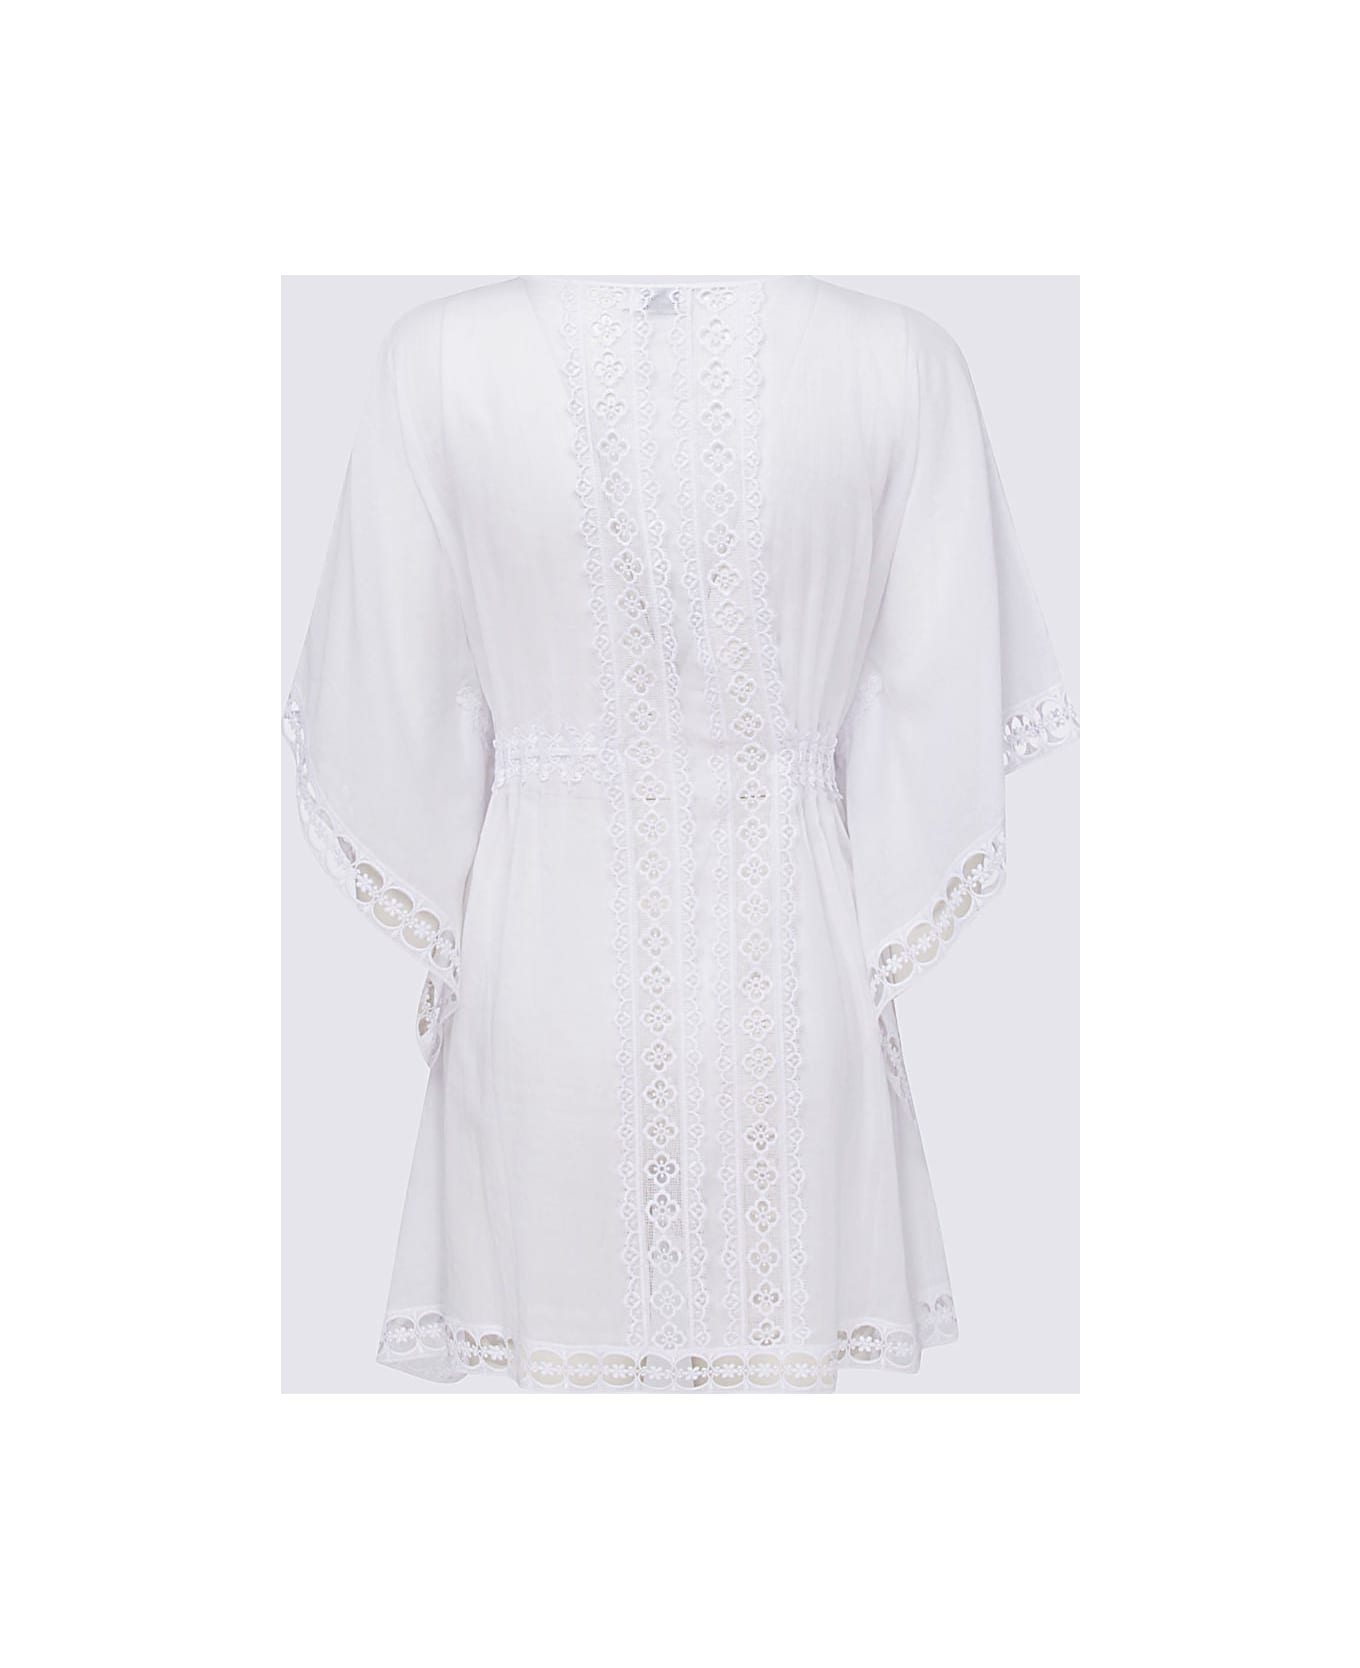 Charo Ruiz White Cotton Blend Dress